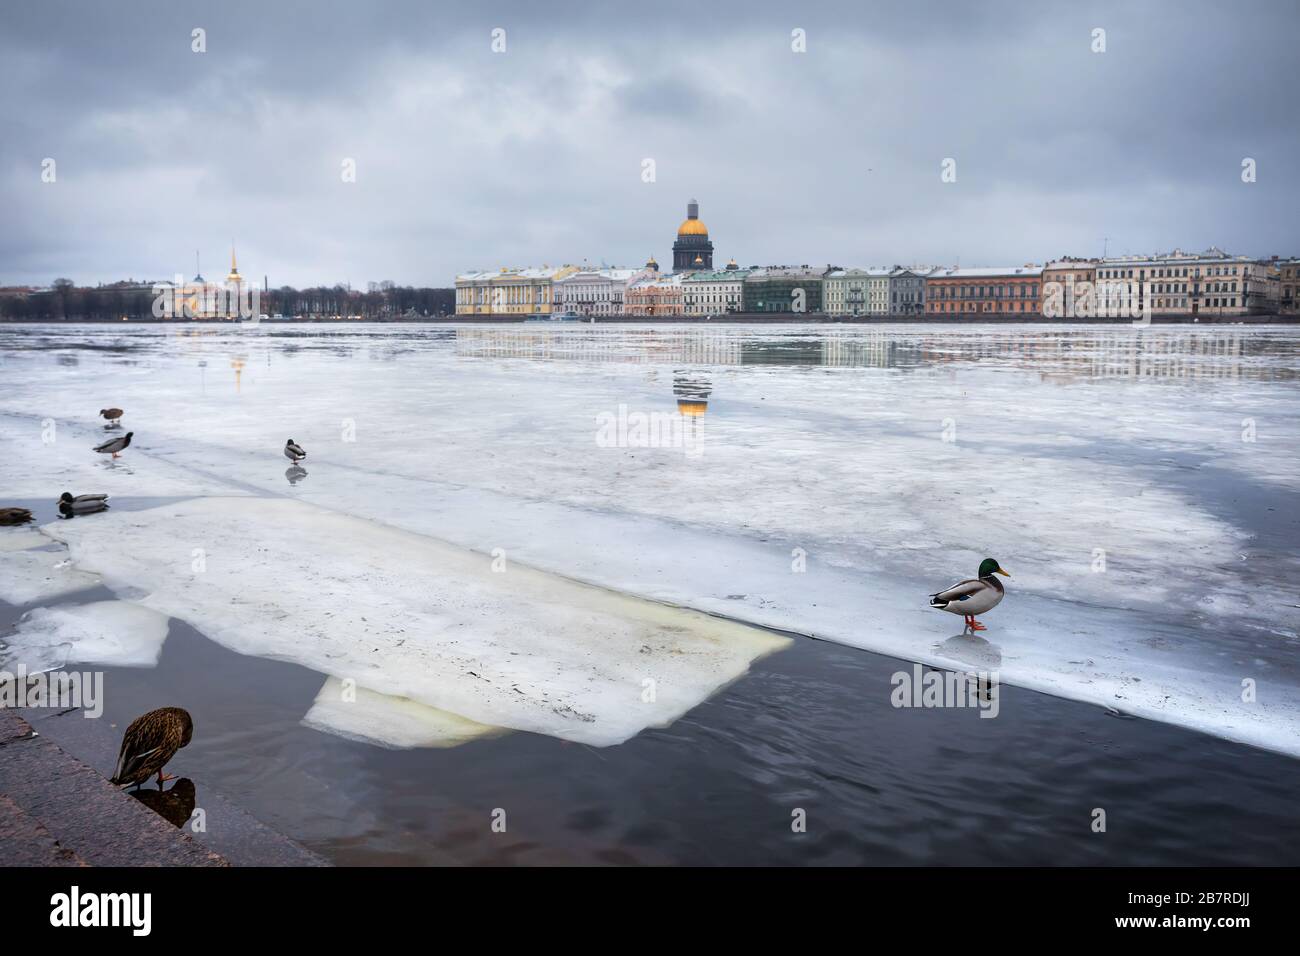 La rivière Neva gelée avec des canards et de la cathédrale Saint-Isaac sur l'autre face en hiver, Saint-Pétersbourg, Russie Banque D'Images